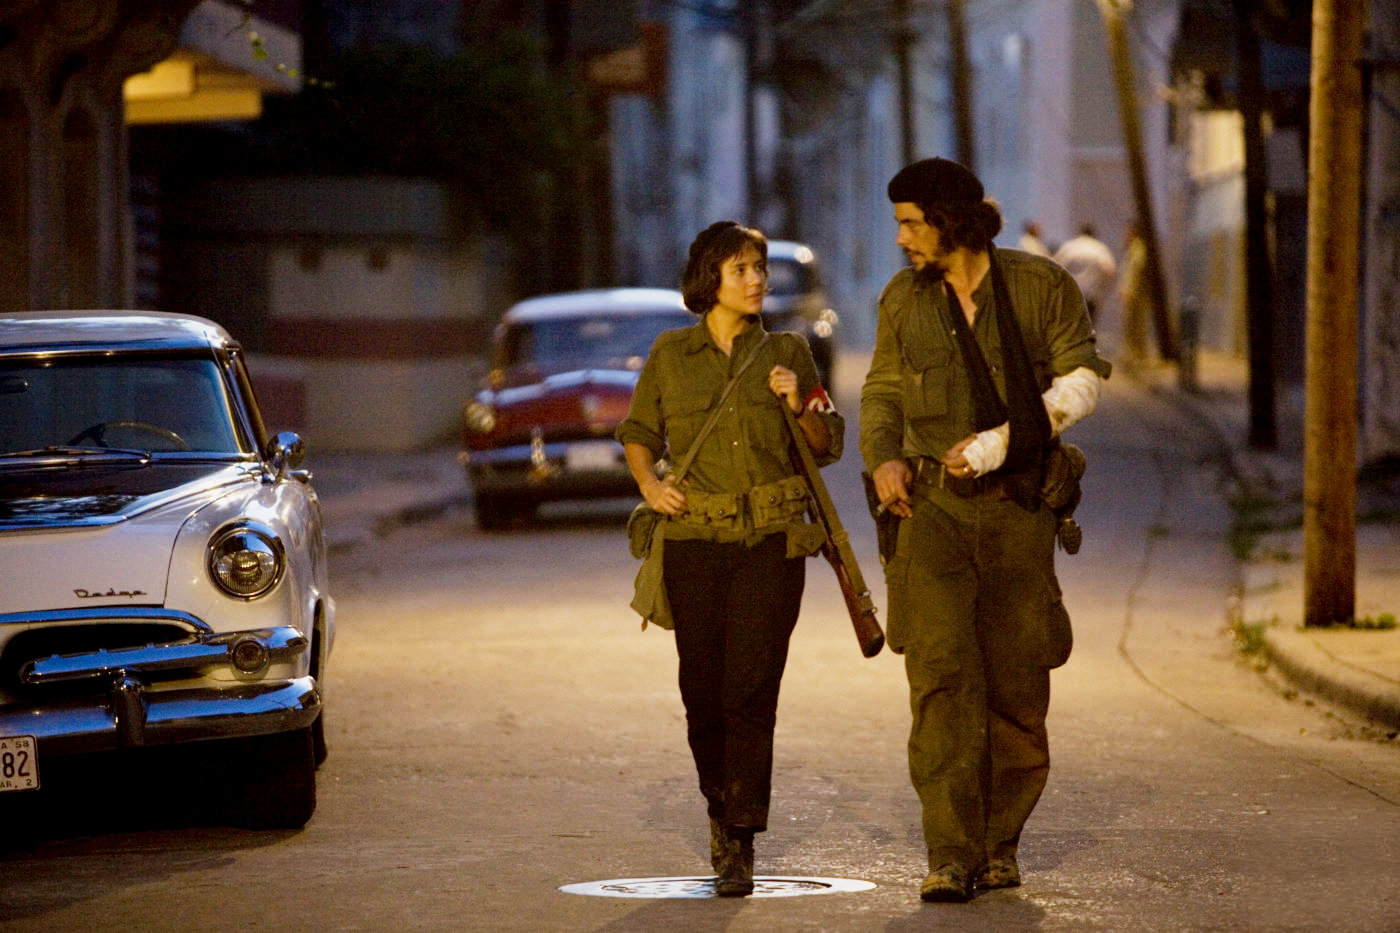 Catalina Sandino Moreno stars as Aleida Guevara and Benicio Del Toro stars as Che in IFC Films' The Argentine (2008)